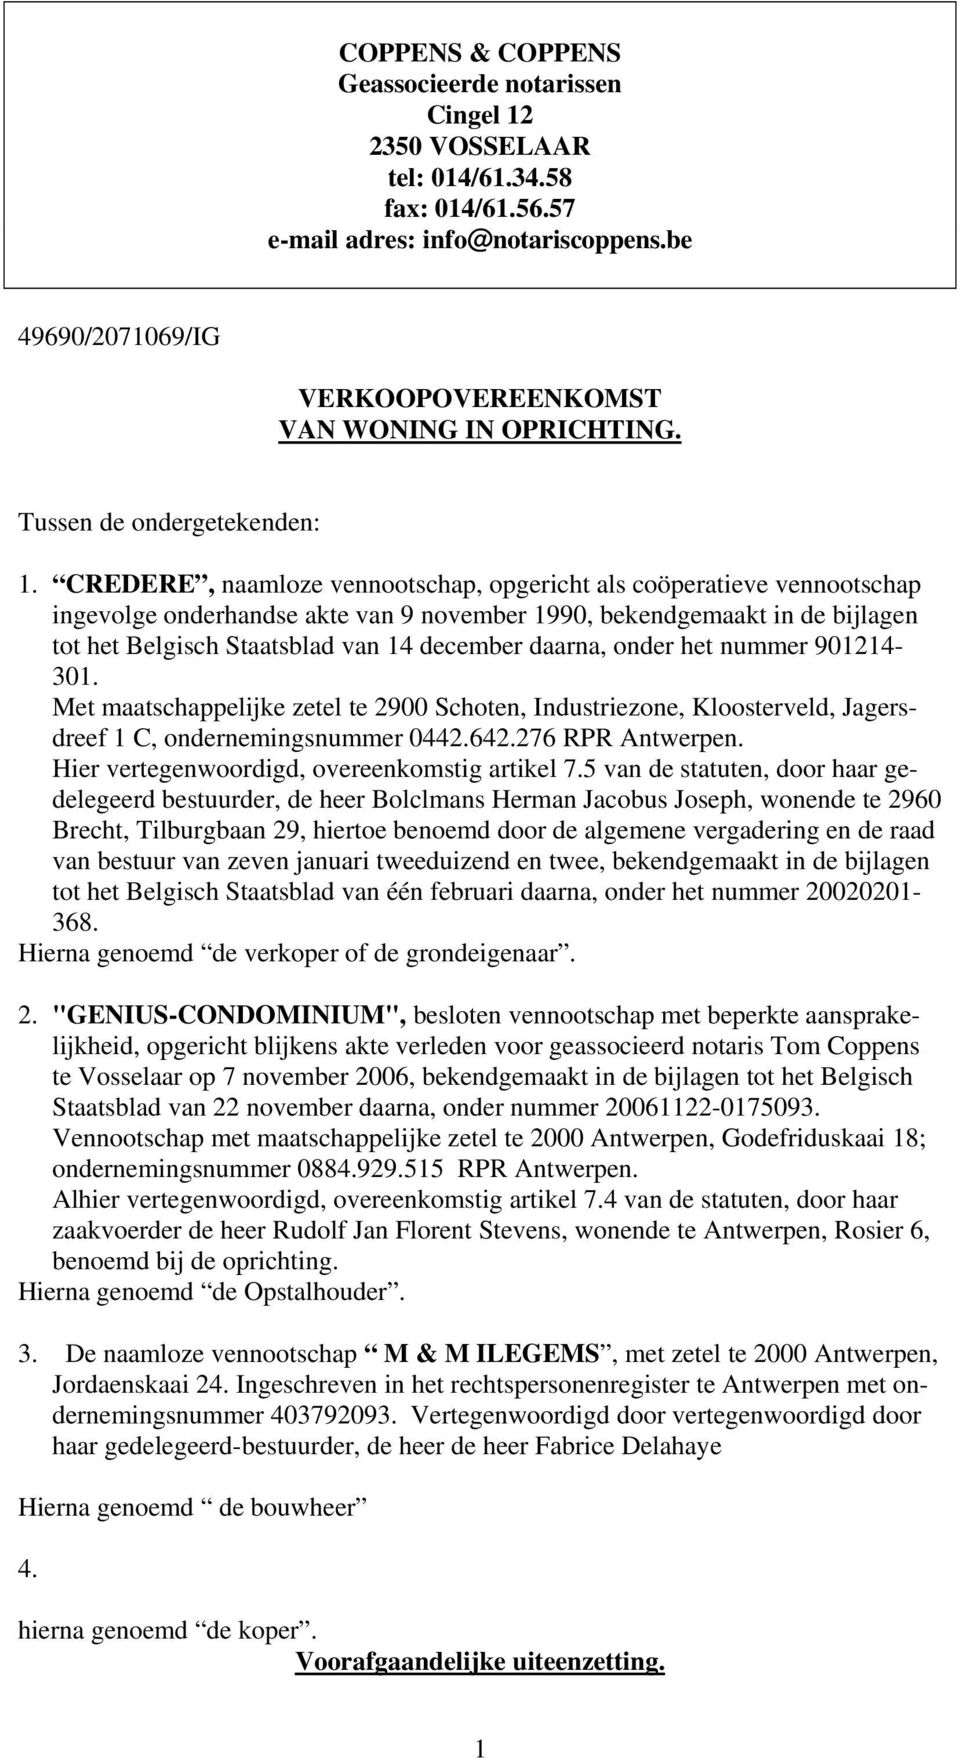 CREDERE, naamloze vennootschap, opgericht als coöperatieve vennootschap ingevolge onderhandse akte van 9 november 1990, bekendgemaakt in de bijlagen tot het Belgisch Staatsblad van 14 december